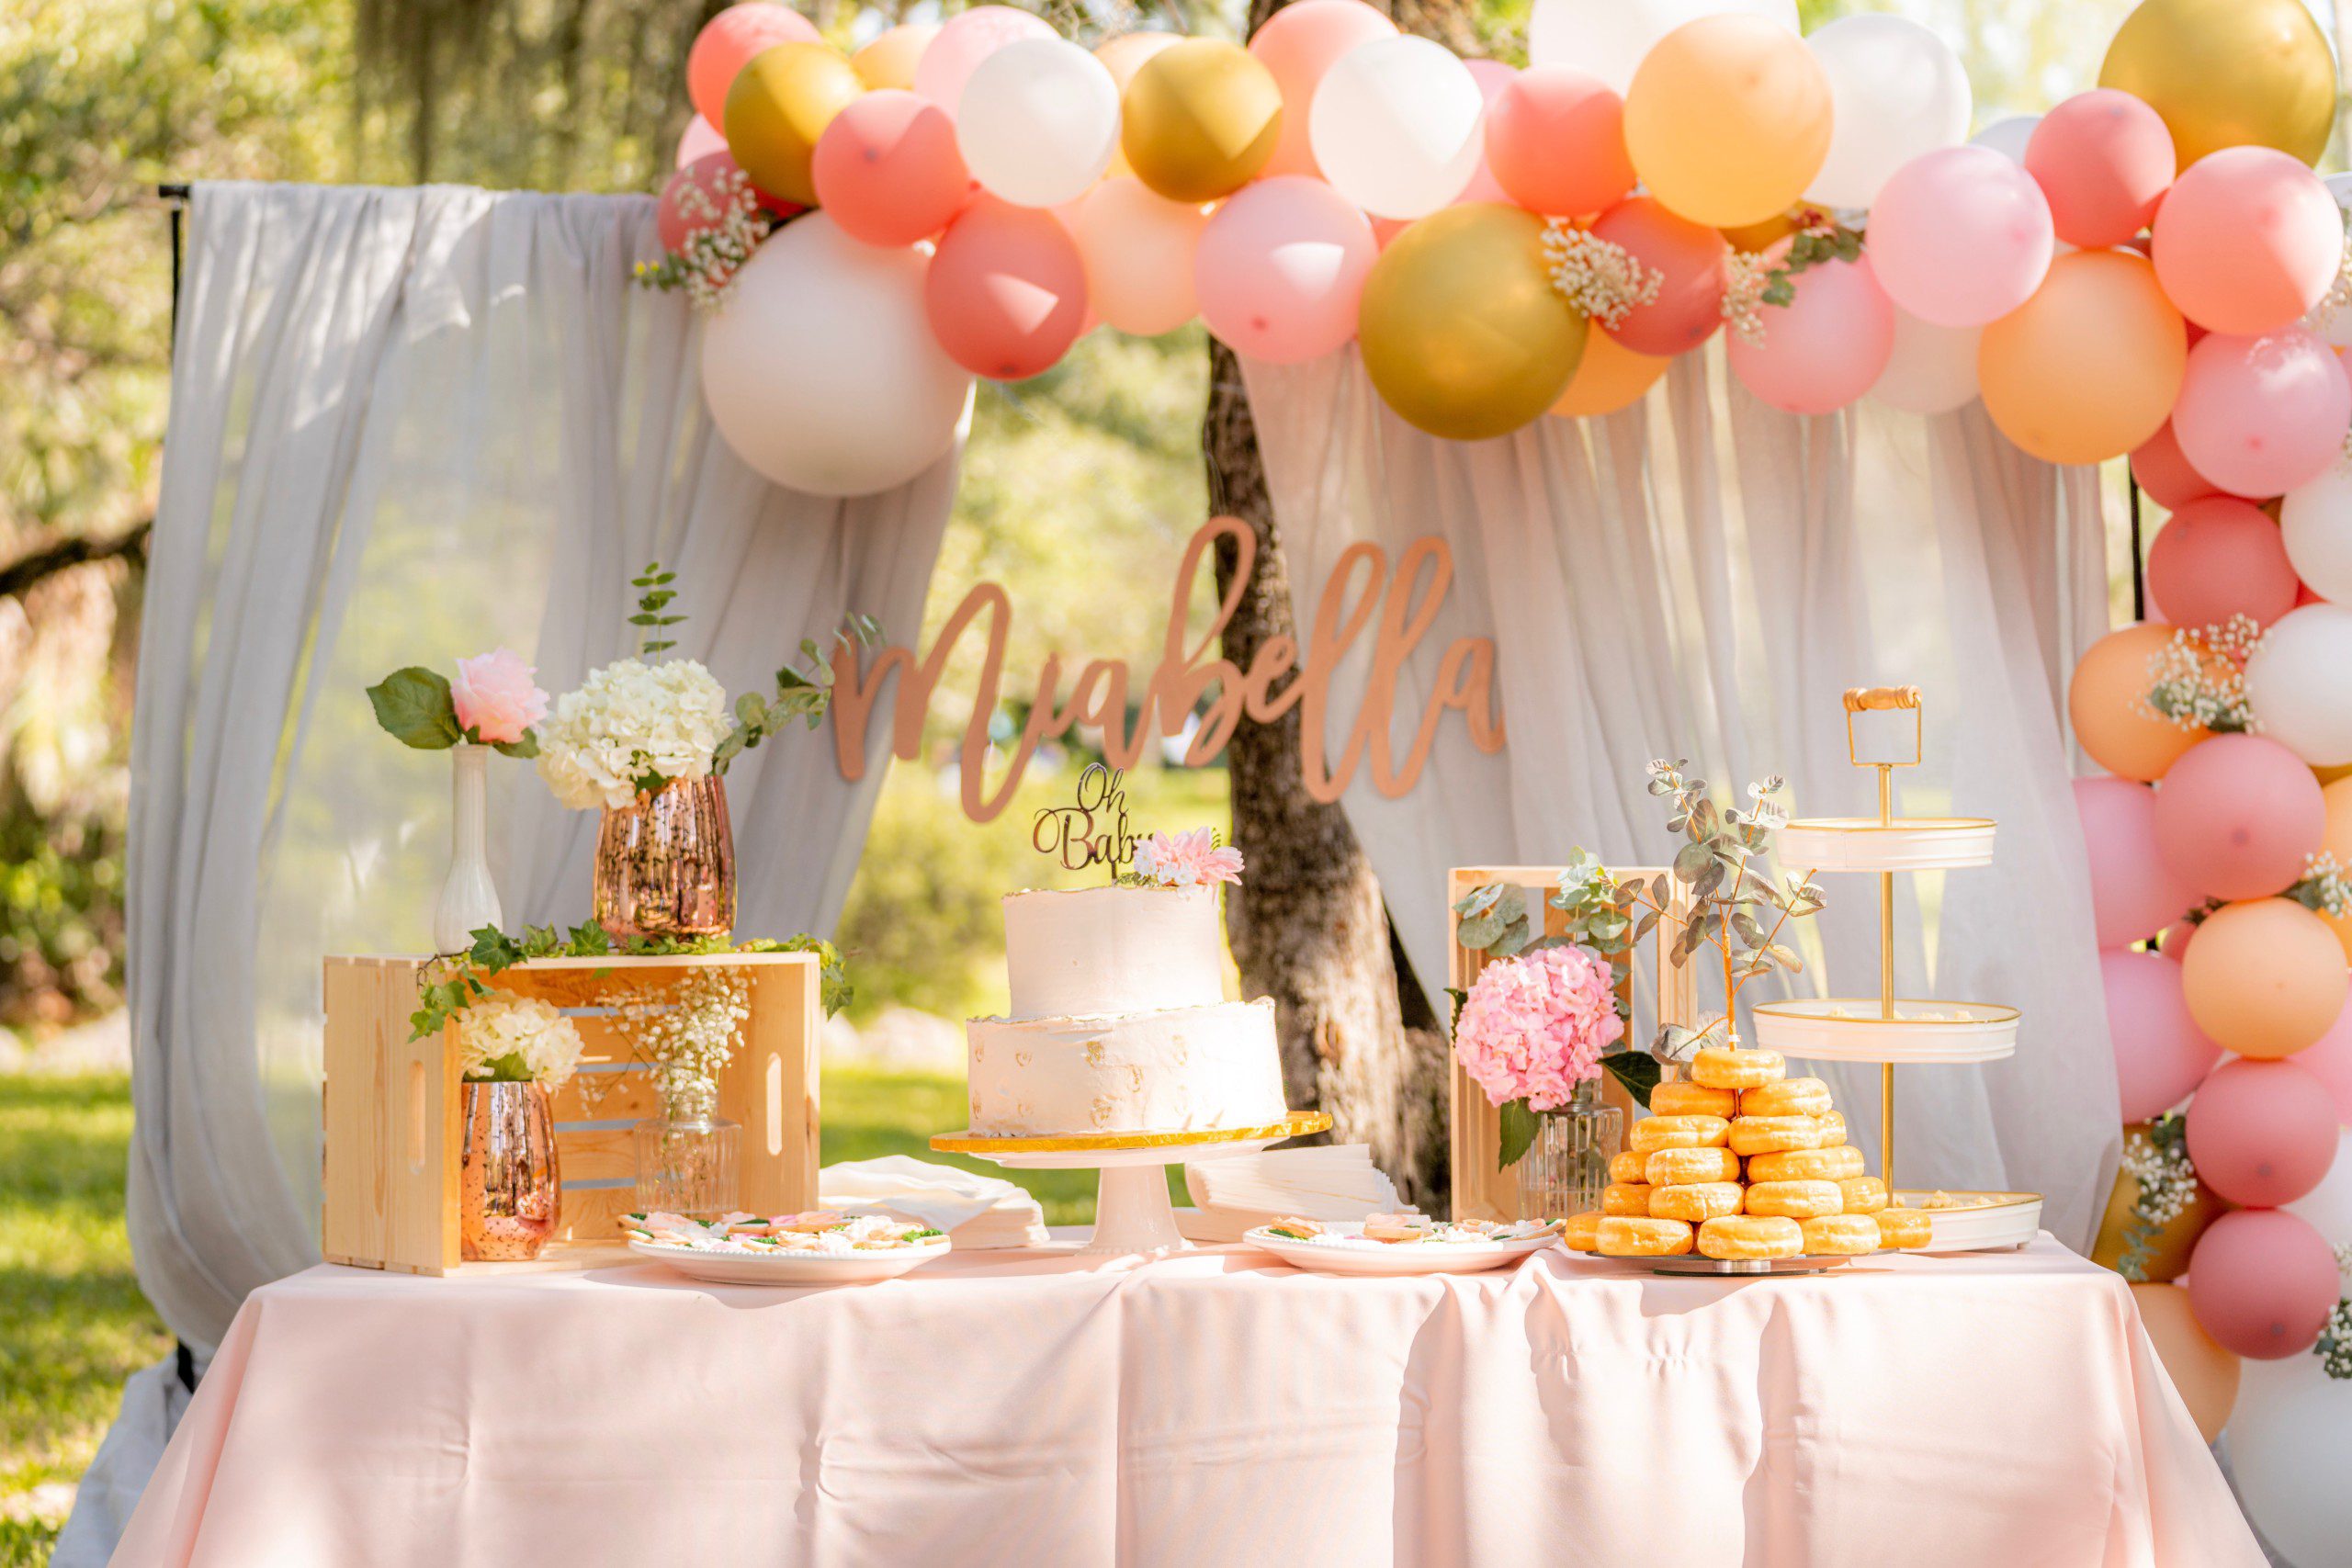 Imagem de uma decoração de festa simples em tons pastéis com um arco de balões desconstruído, mesa de doces com bolo de dois andares e vasos de flores.